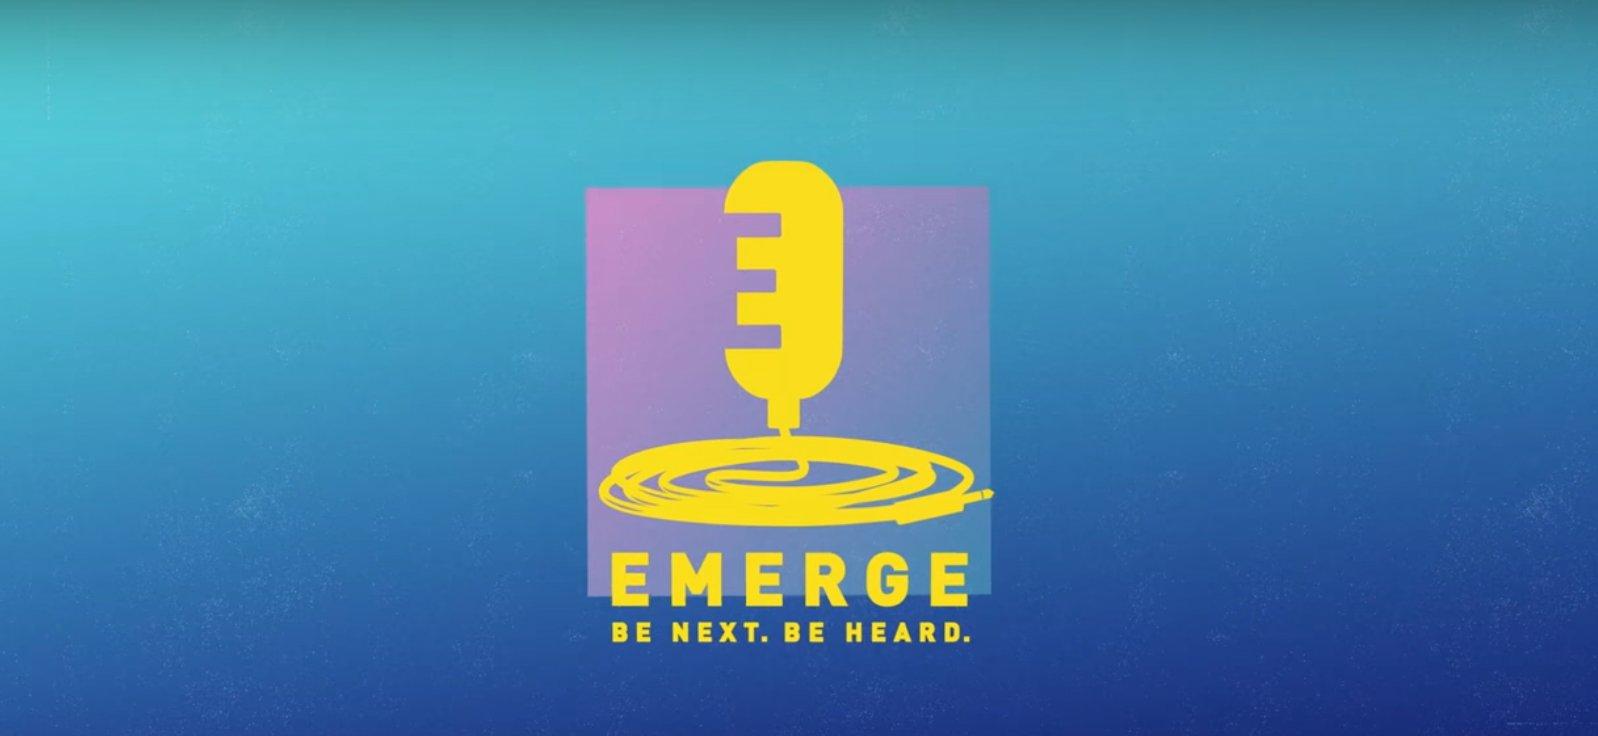 EMERGE logo